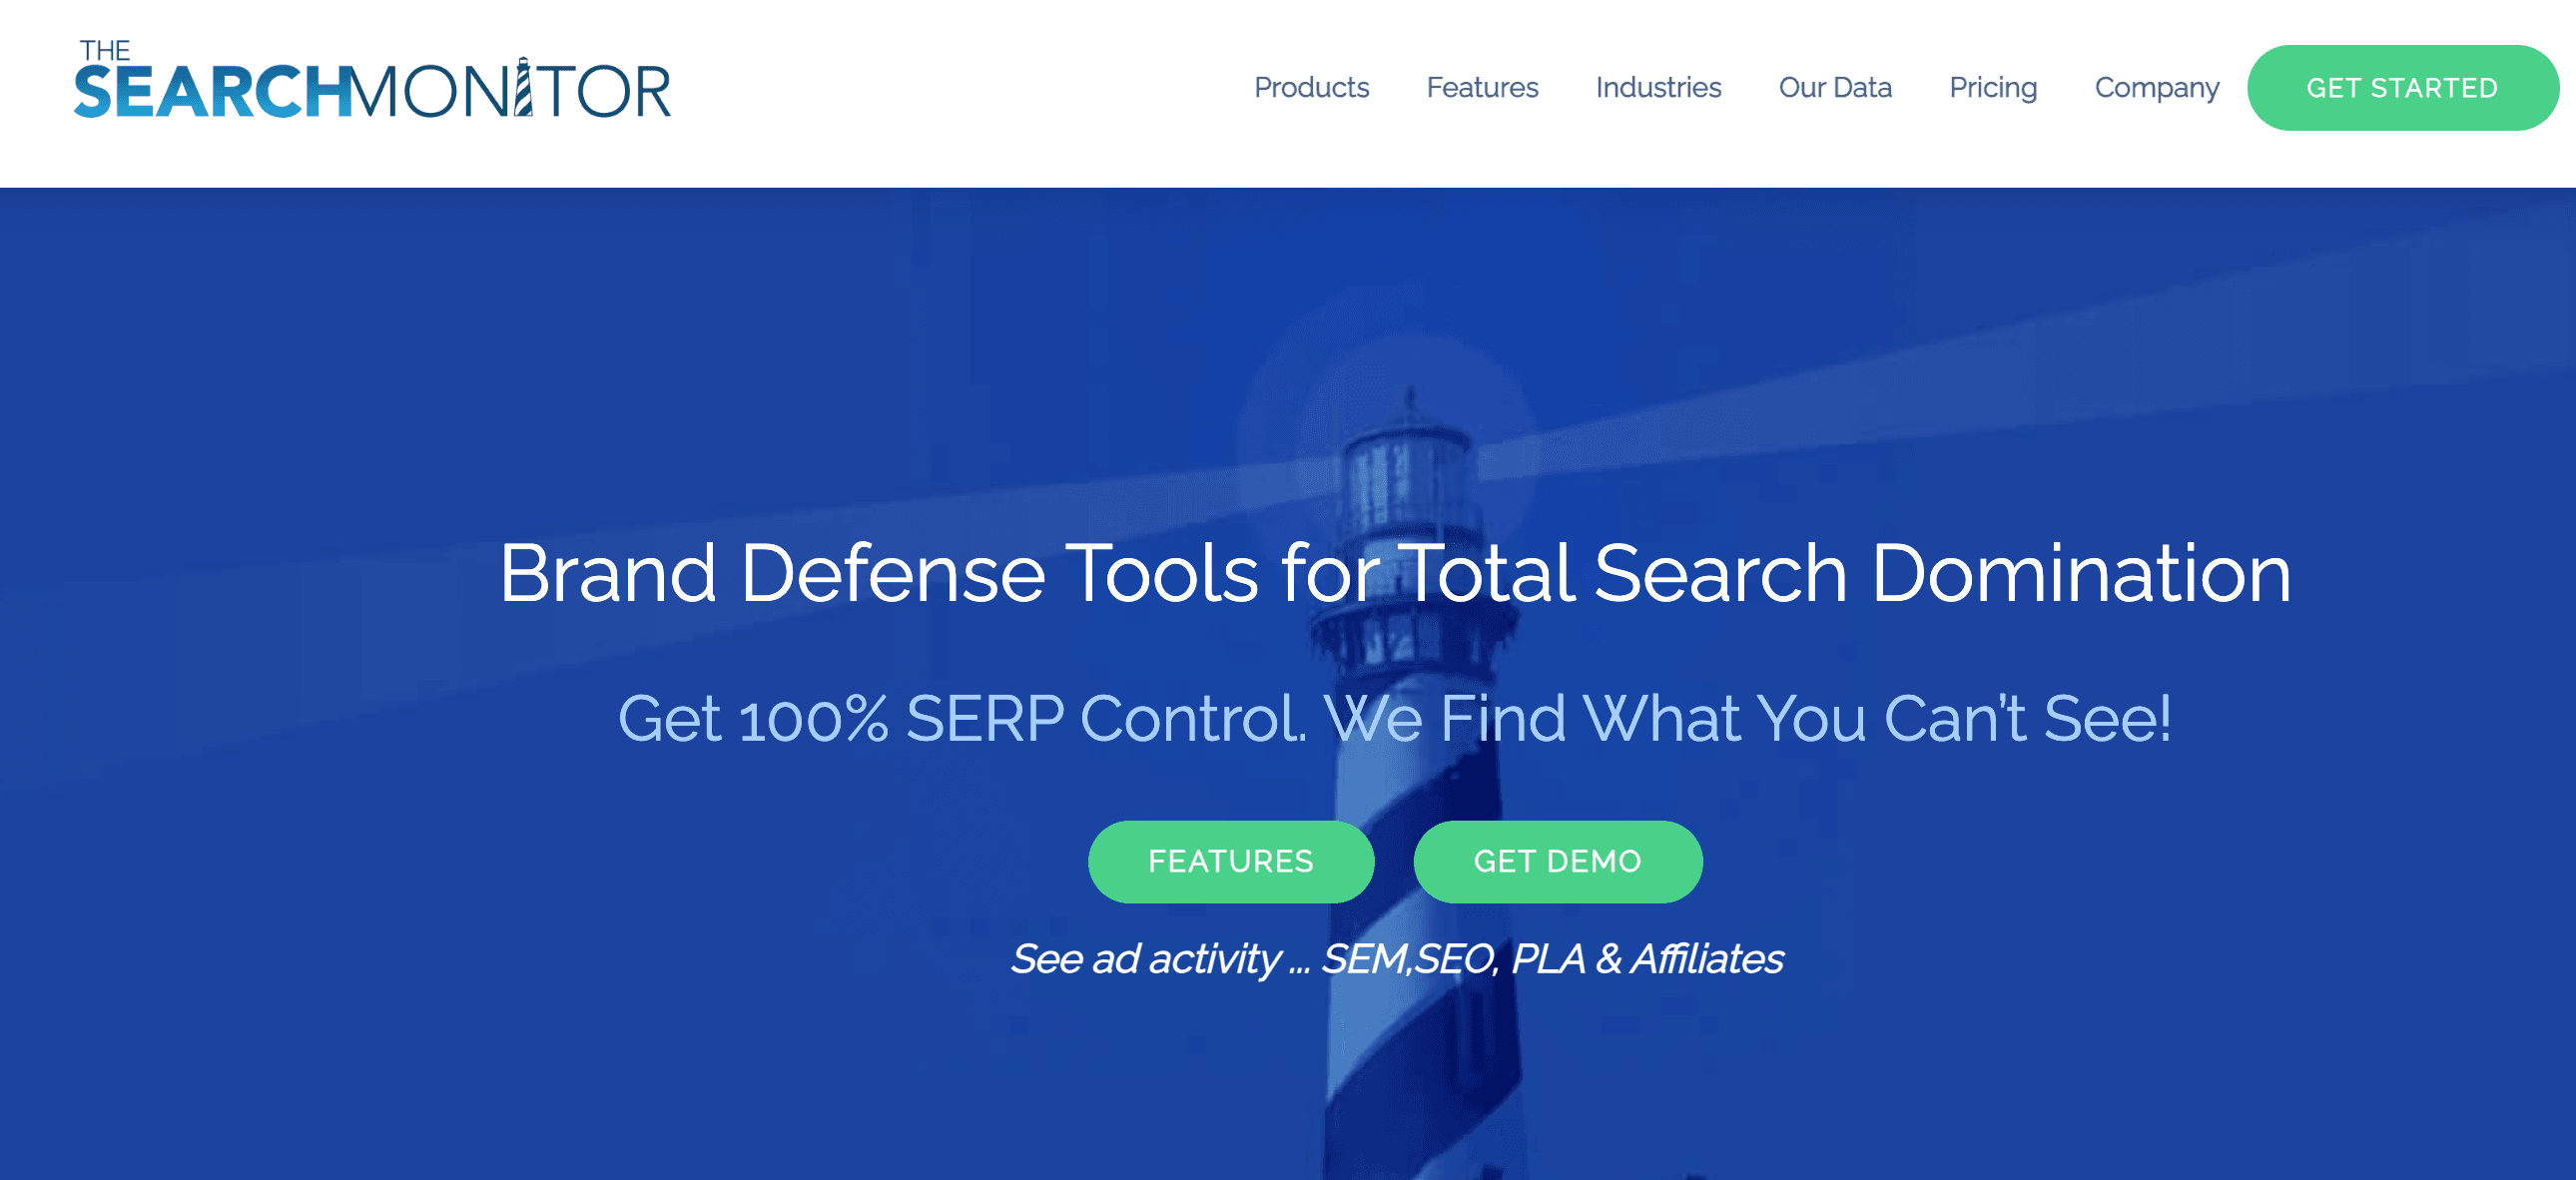 The Search Monitor brand defense